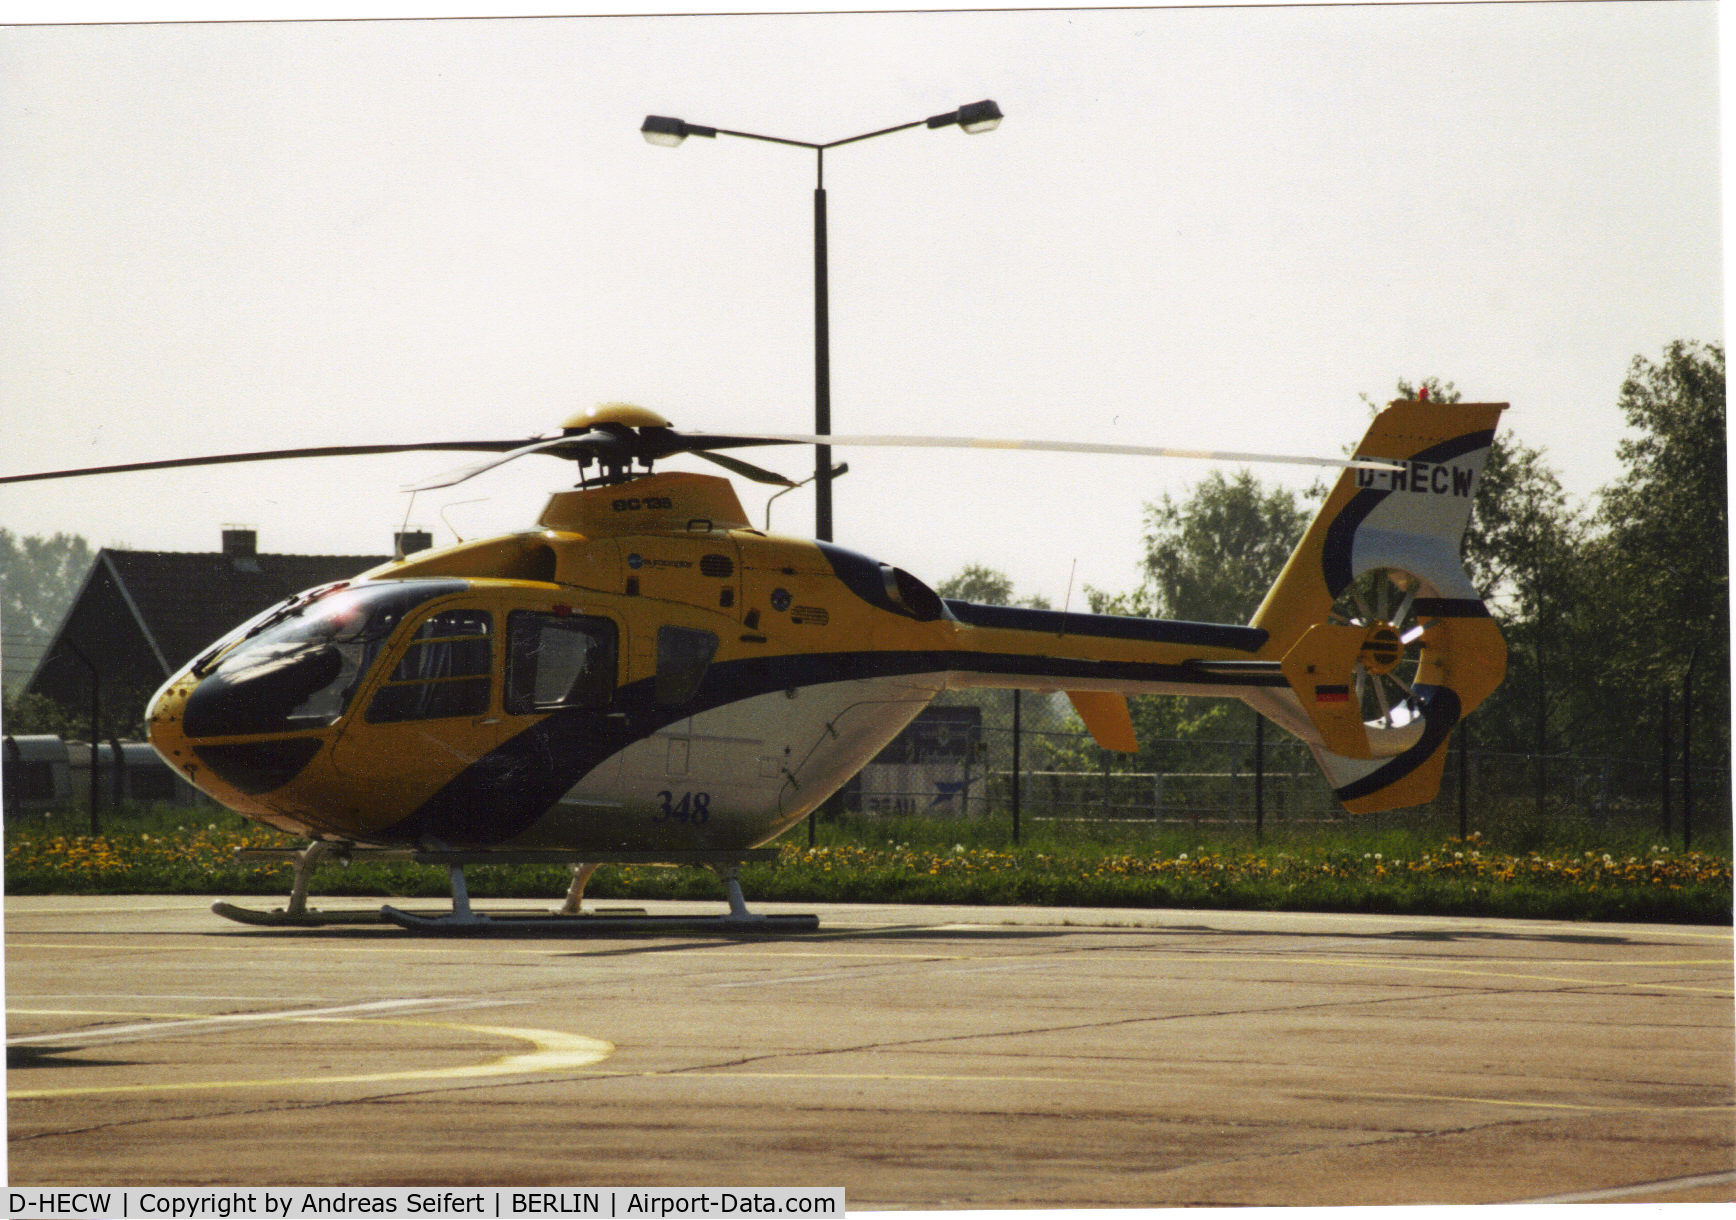 D-HECW, 2009 Eurocopter EC-135T-2 C/N 0717, Berlin ILA 2002